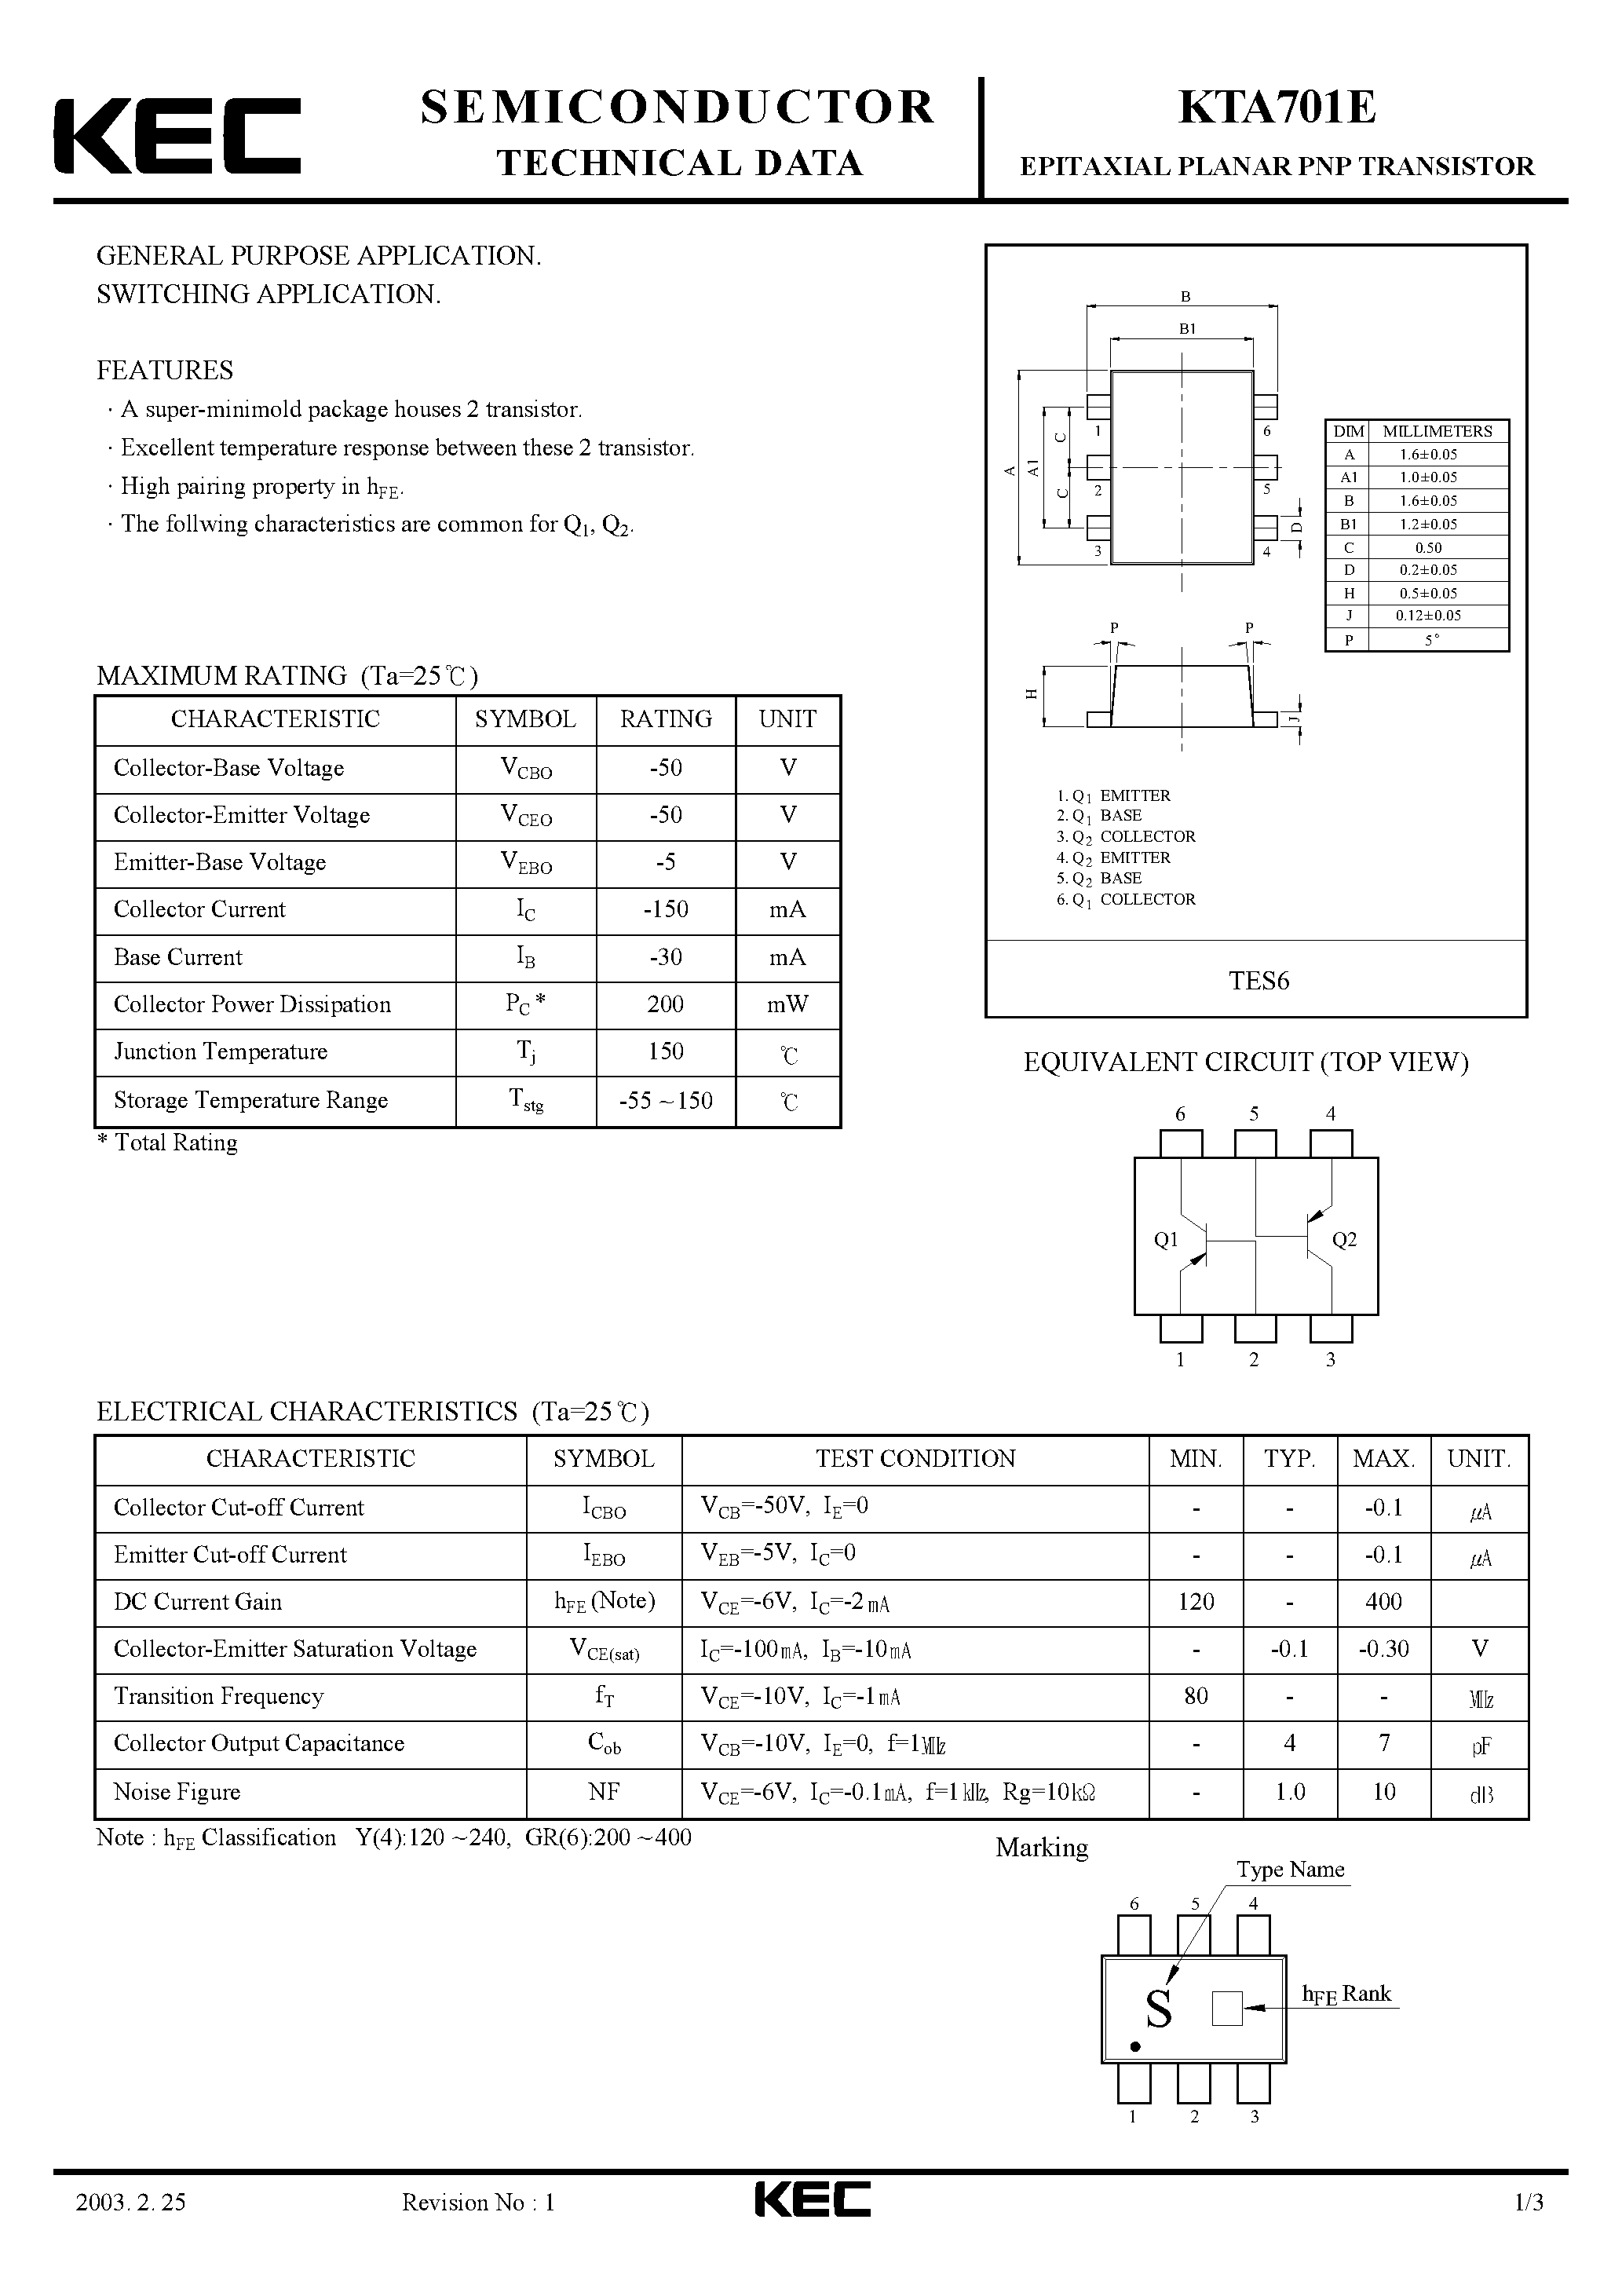 Datasheet KTA701E - EPITAXIAL PLANAR PNP TRANSISTOR (GENERAL PURPOSE/ SWITCHING) page 1